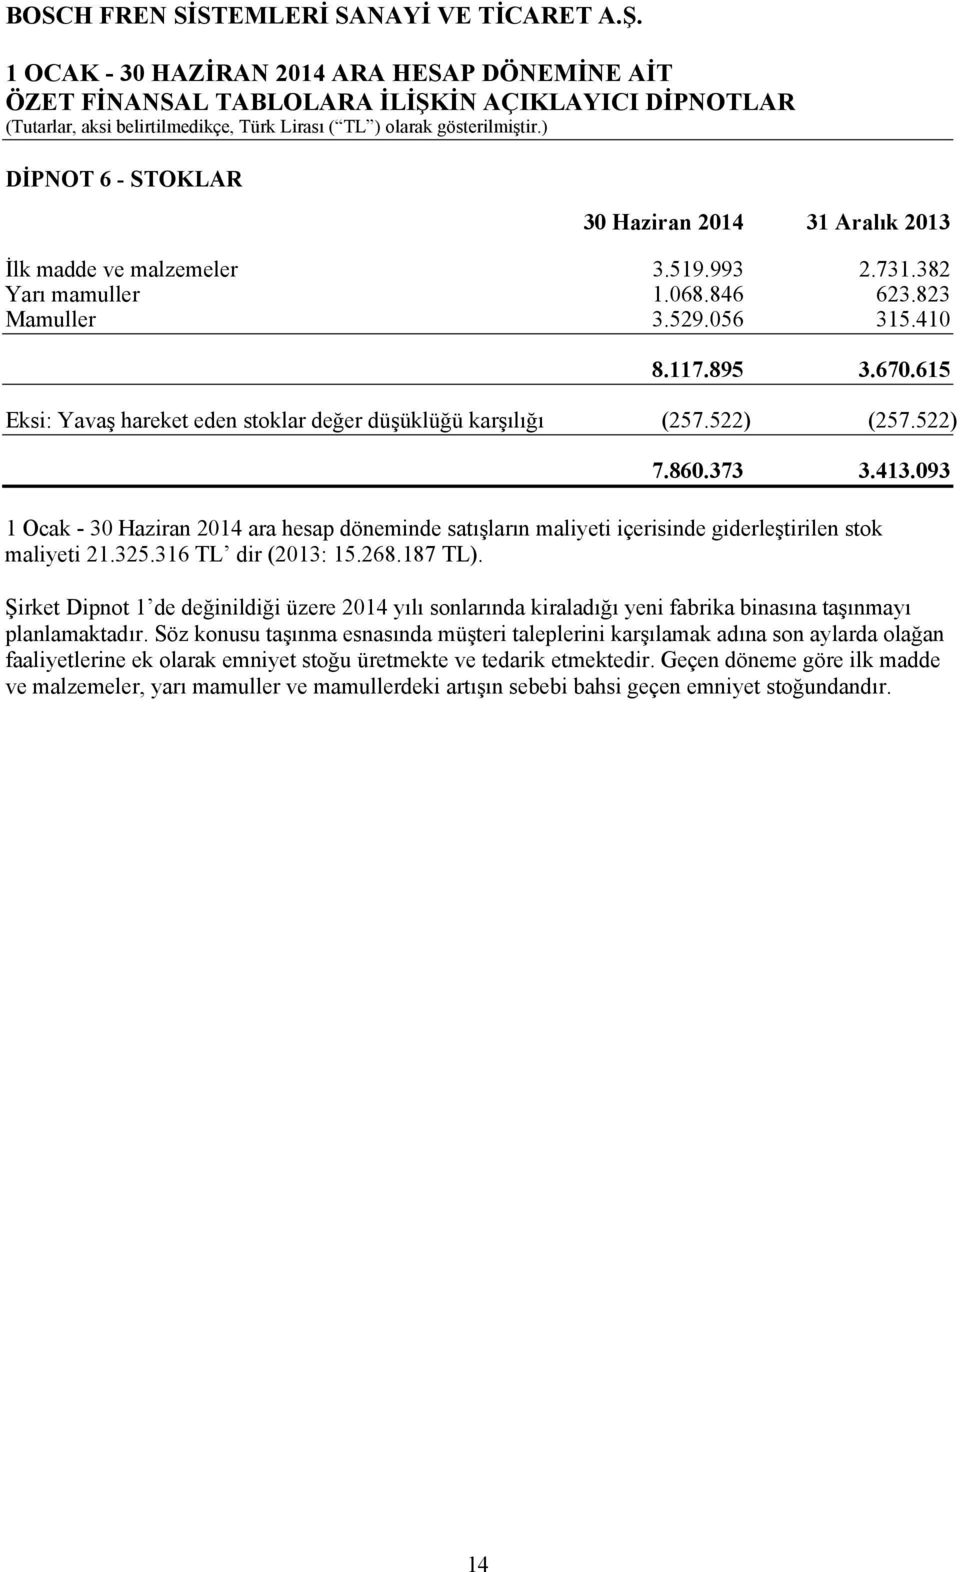 093 1 Ocak - 30 Haziran 2014 ara hesap döneminde satışların maliyeti içerisinde giderleştirilen stok maliyeti 21.325.316 TL dir (2013: 15.268.187 TL).